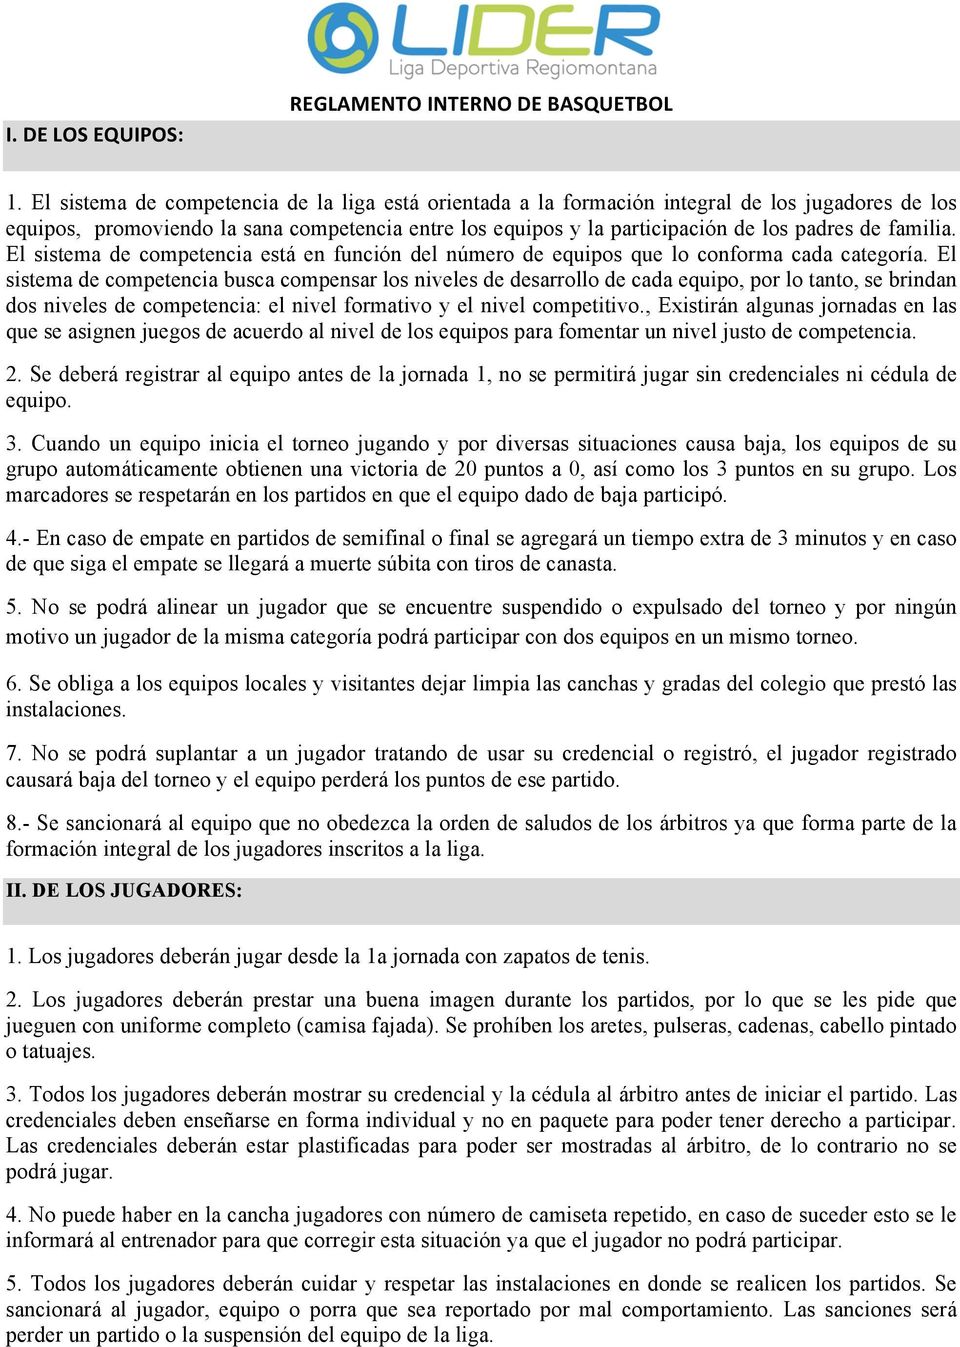 REGLAMENTO INTERNO DE BASQUETBOL - PDF Free Download